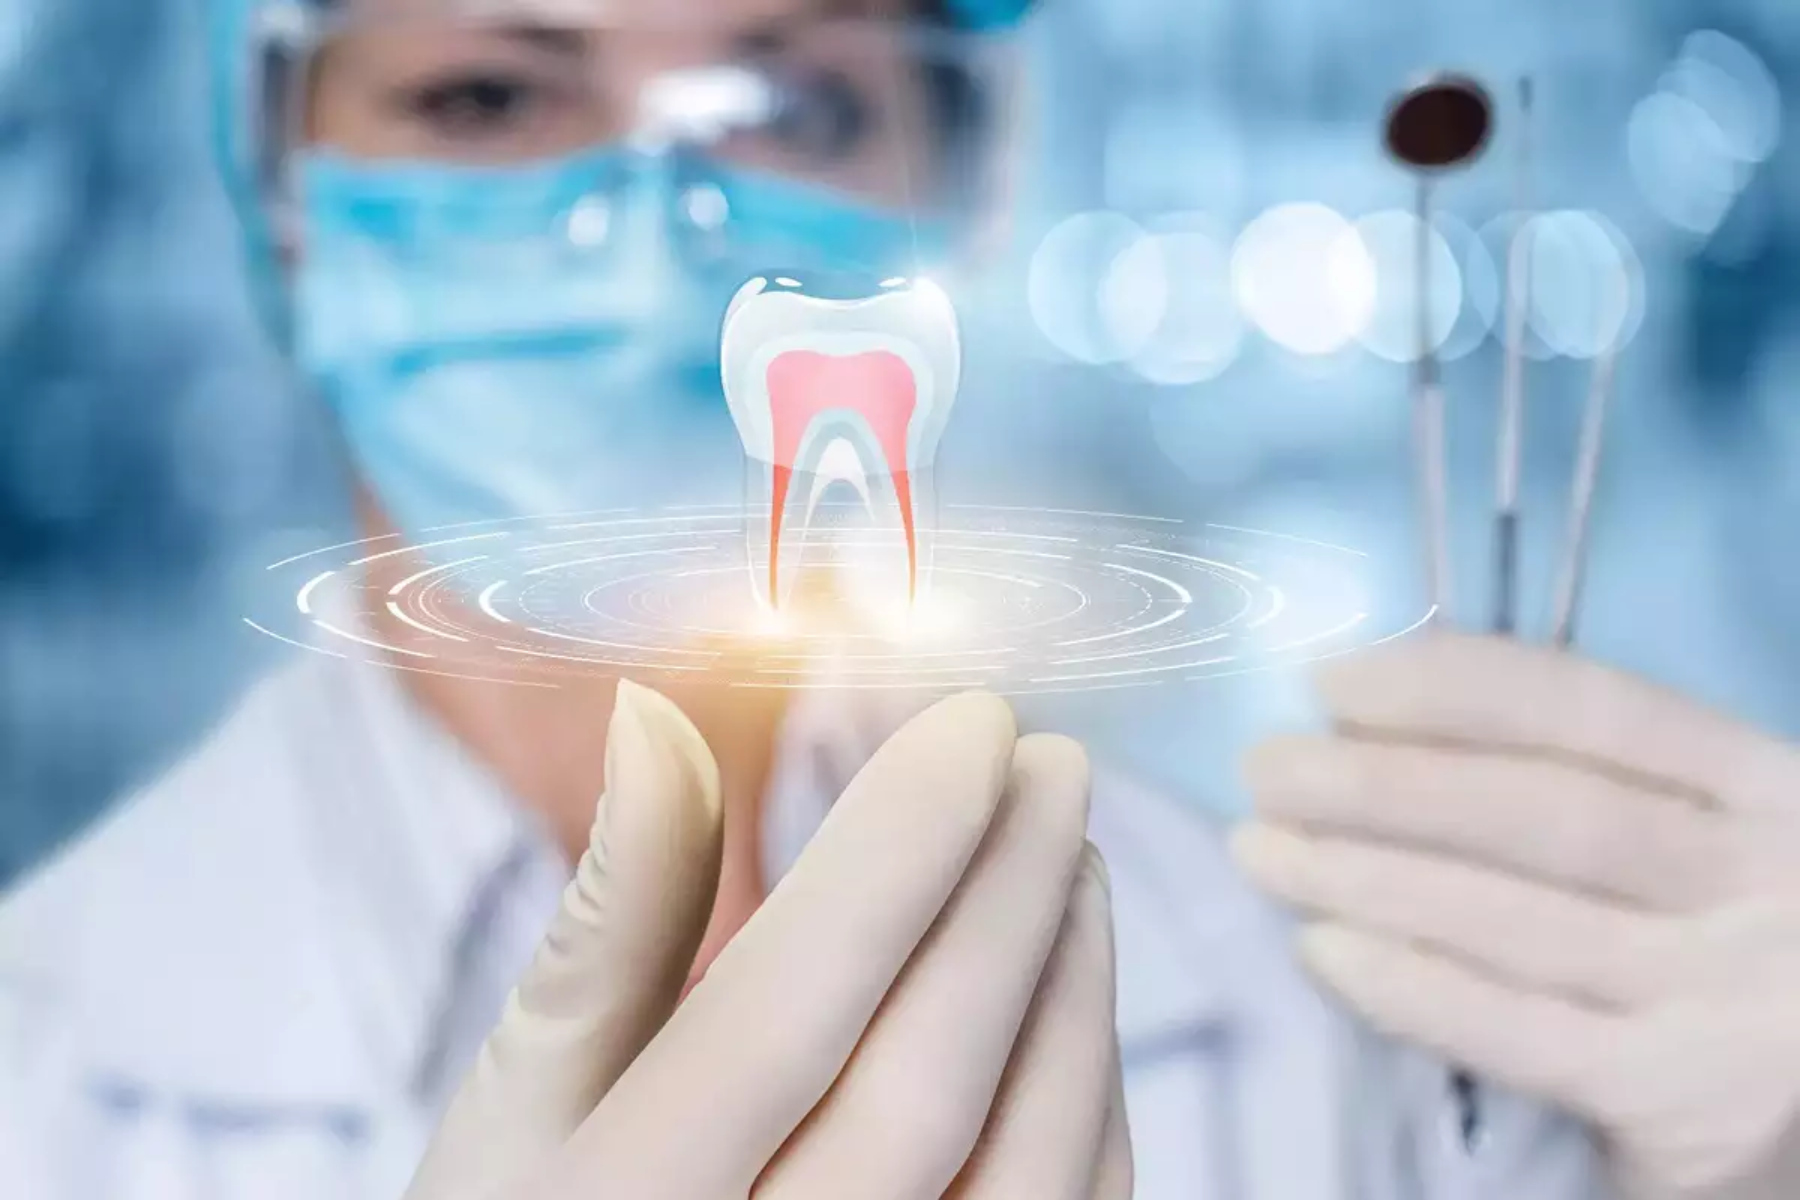 Οδοντική υγεία: Πώς η οδοντική υγεία και τεχνολογία εξελίσσεται;